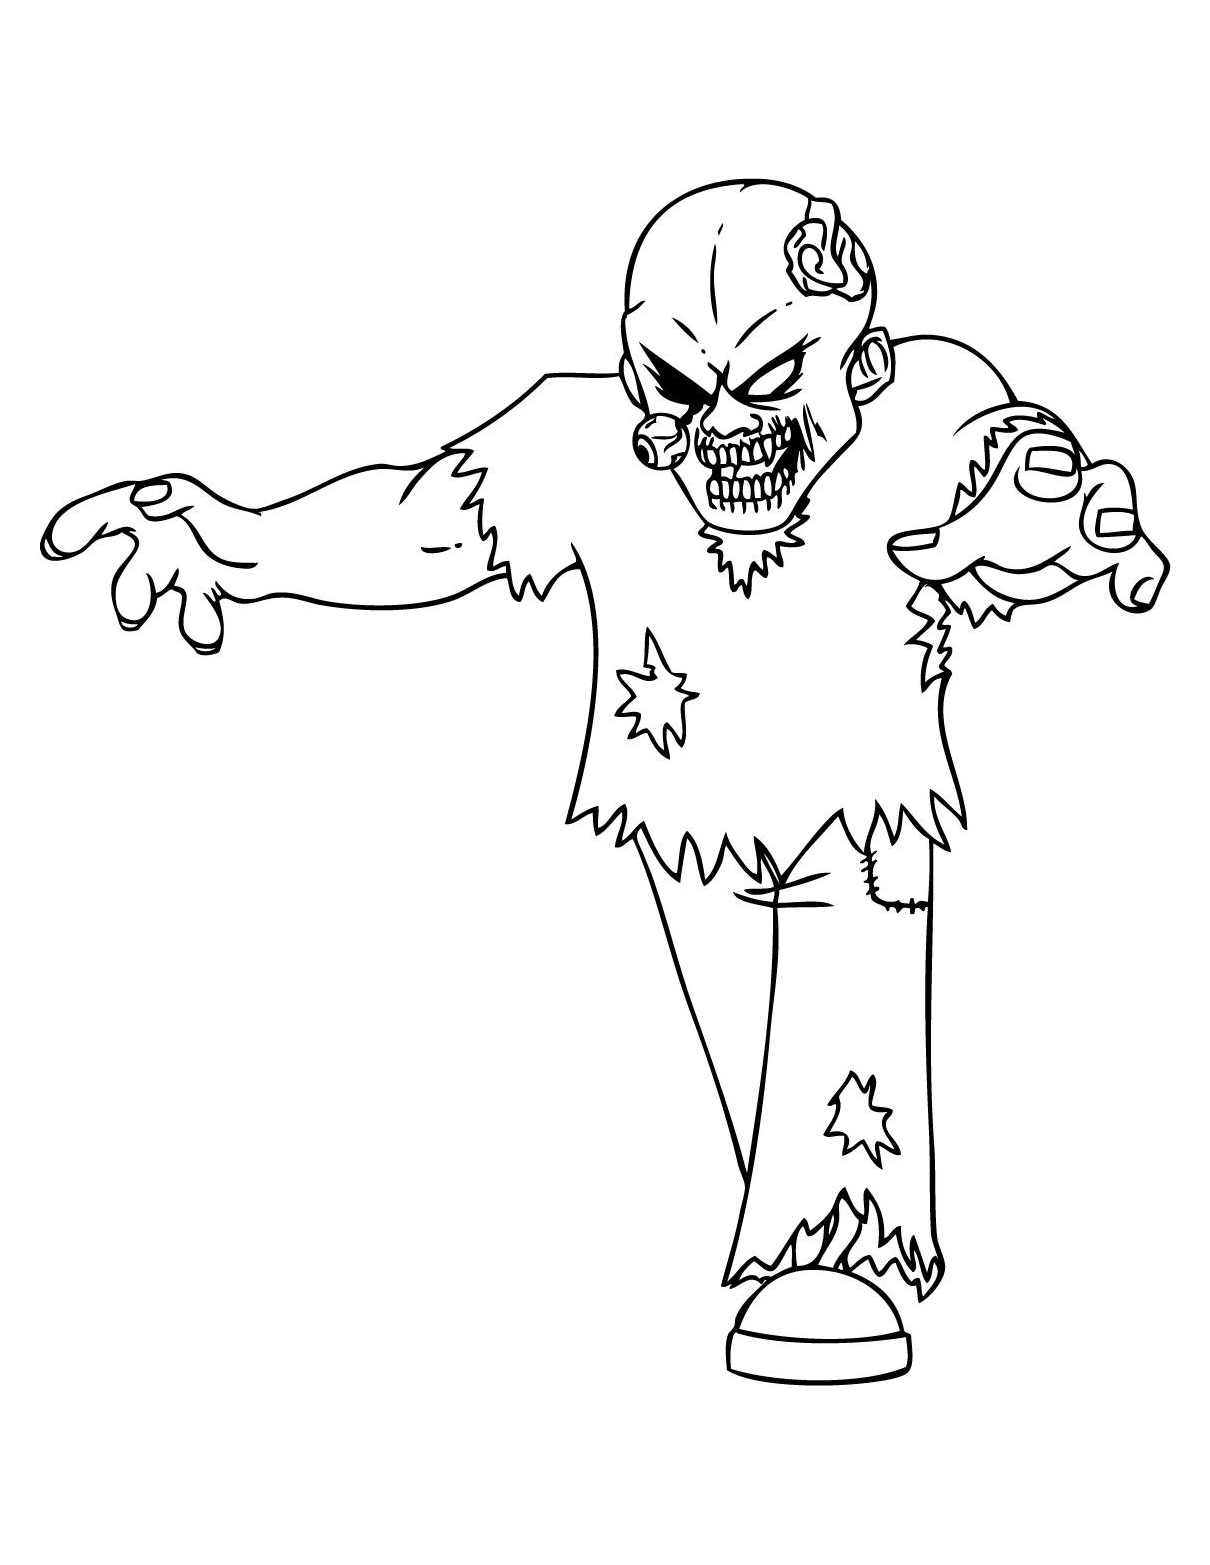 Dibujo de zombie para imprimir y colorear